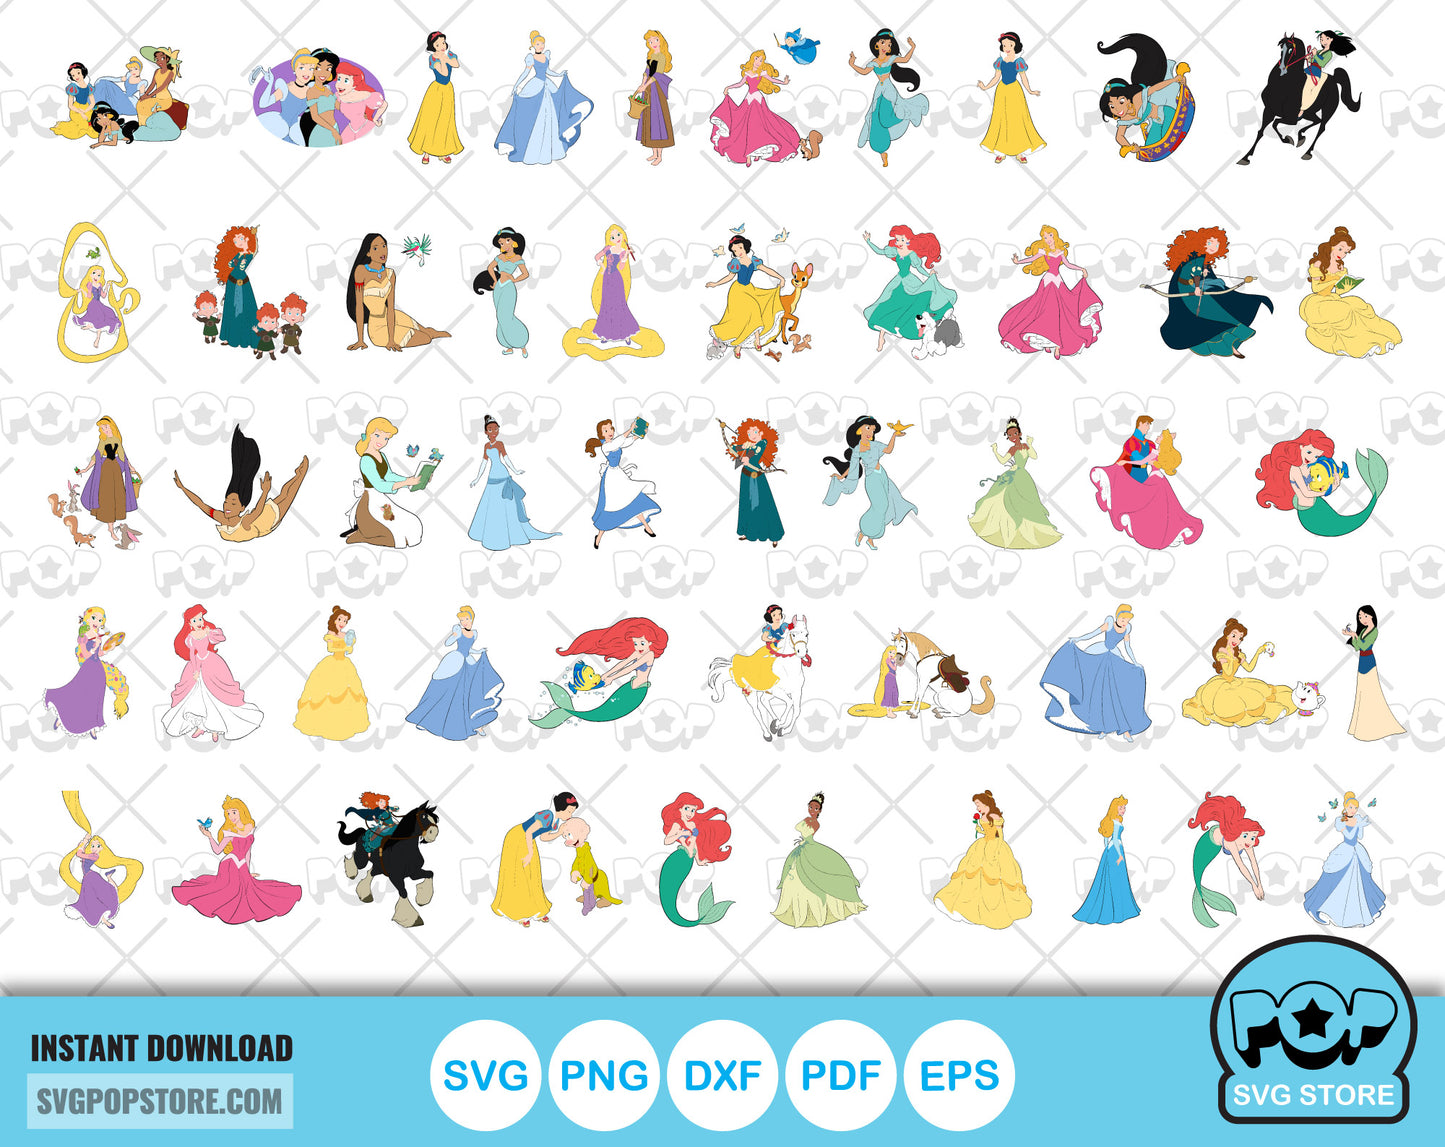 Classic Princesses clipart bundle, Disney Princess svg cut files for Cricut / Silhouette, Princess png